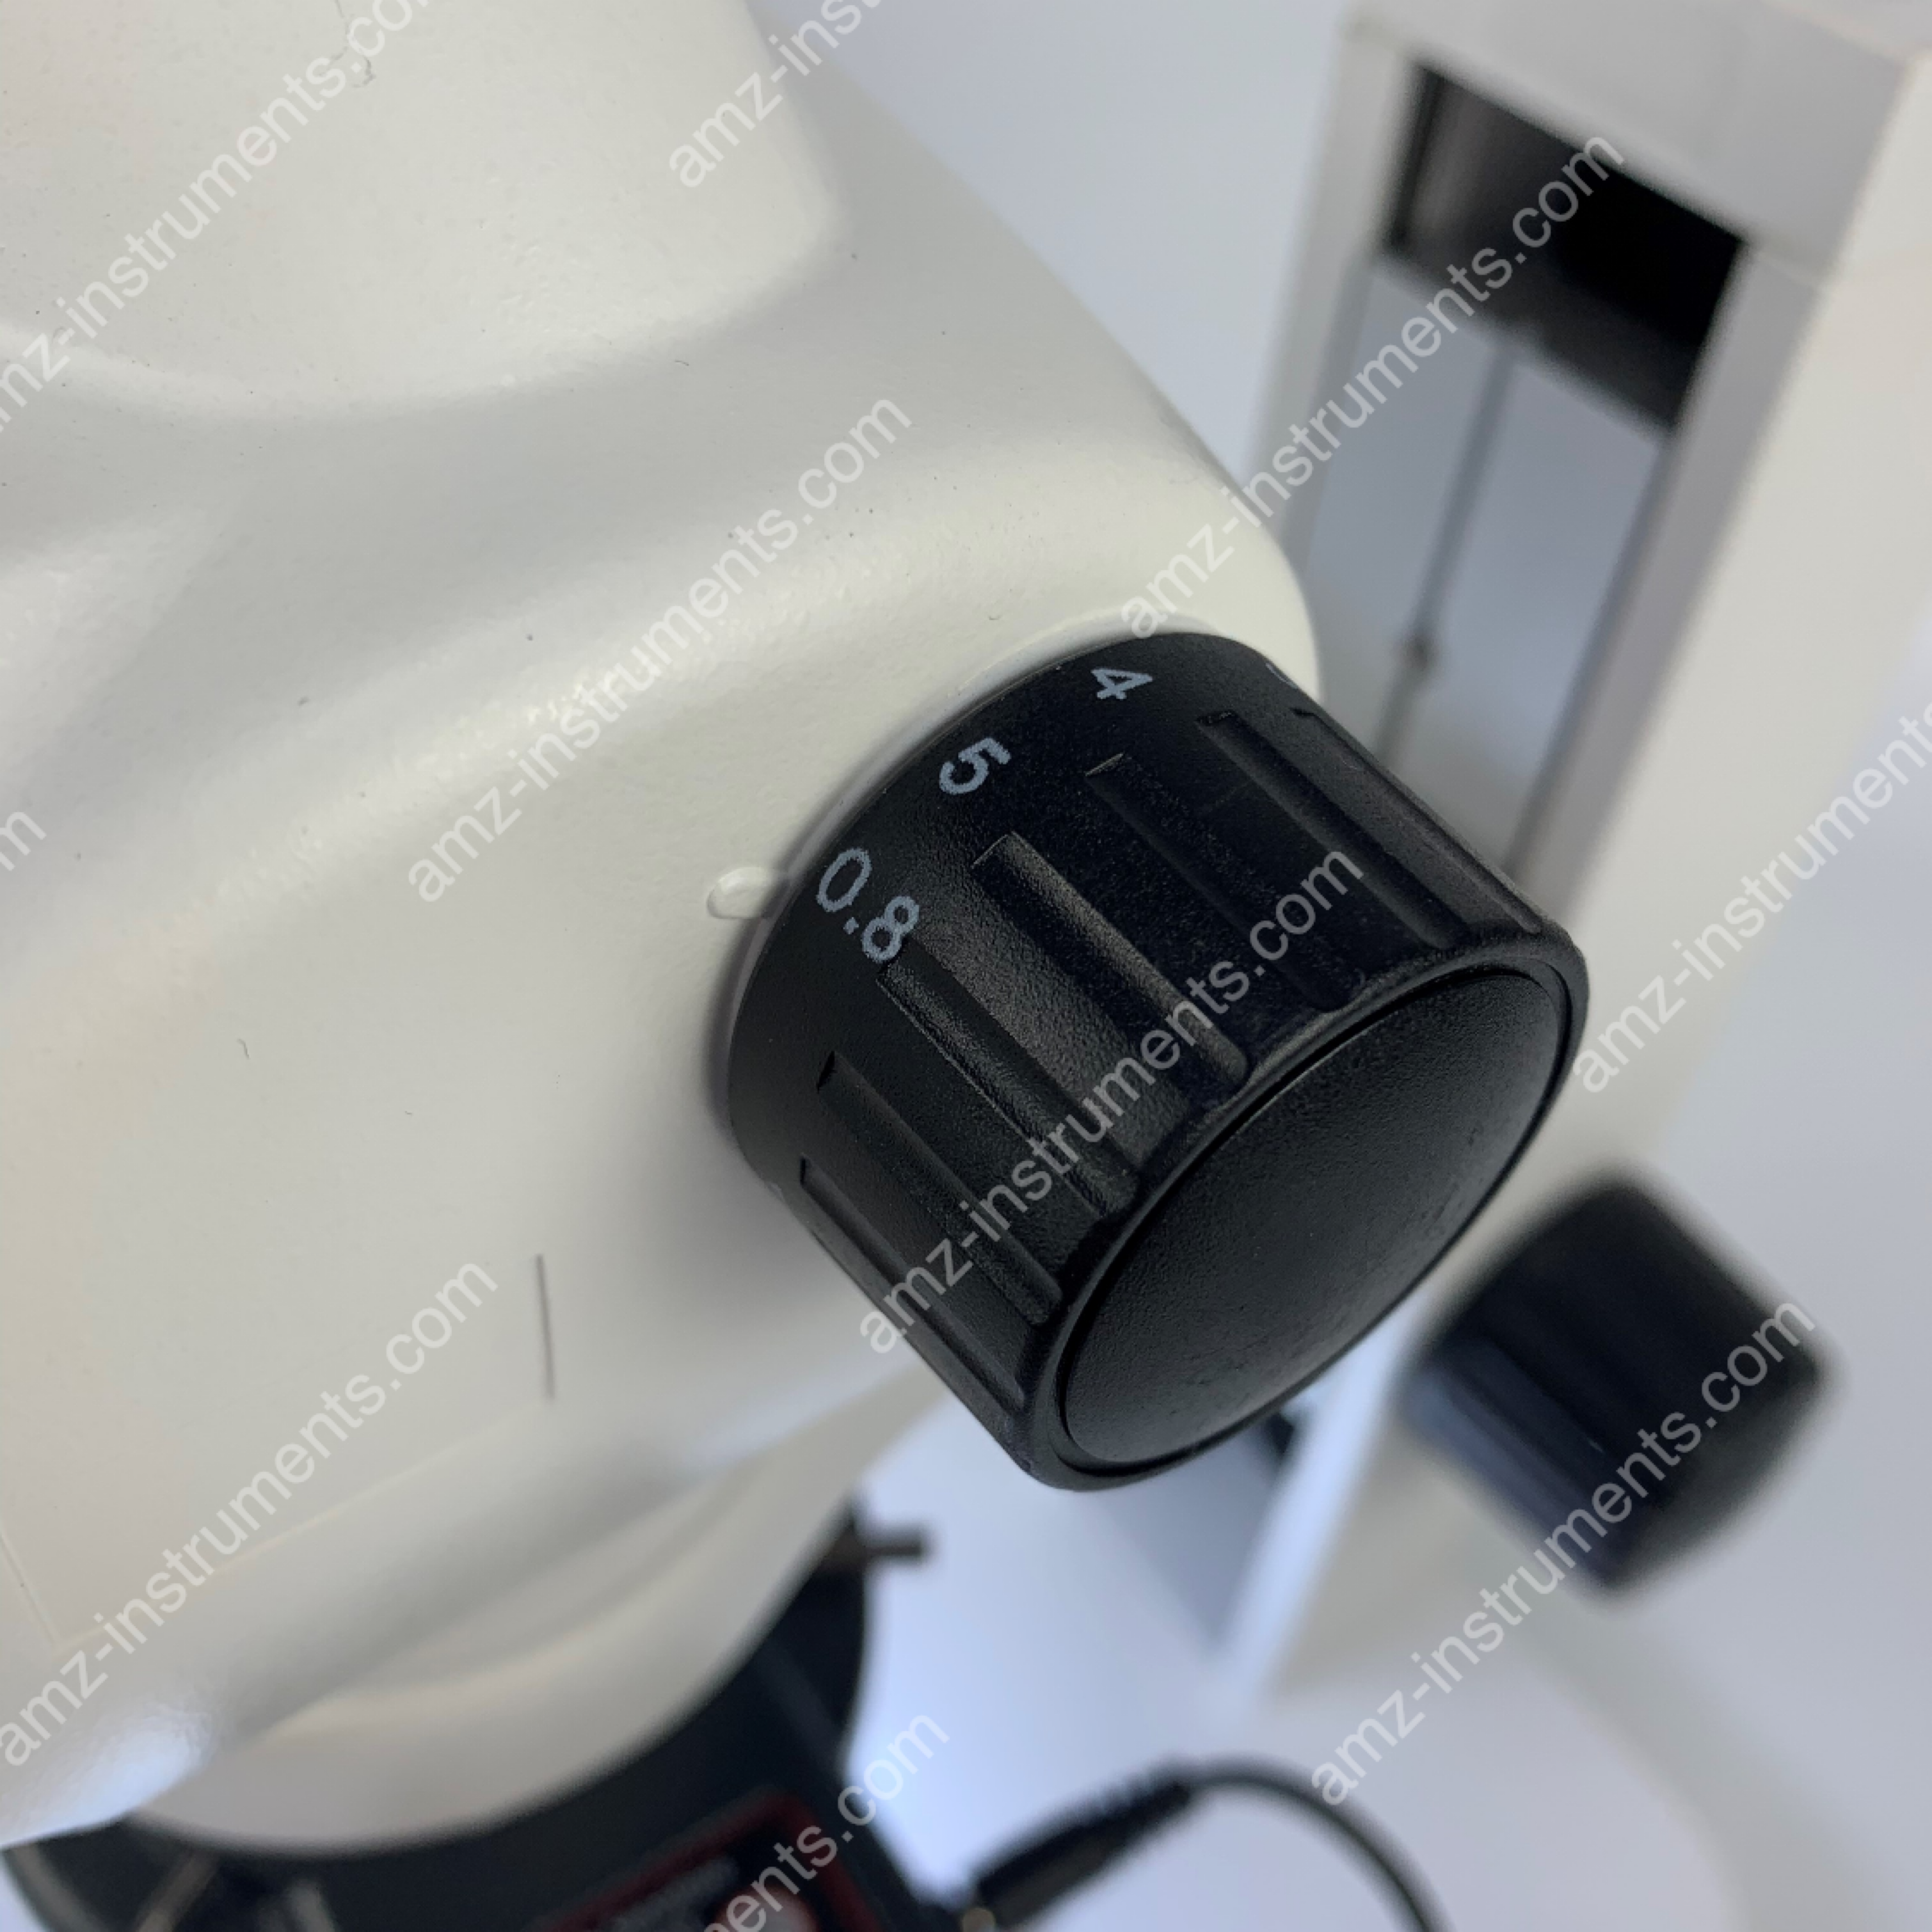 ZM0850T-R1 0.8X-5.0X Zoom Binocular Stereo Microscope